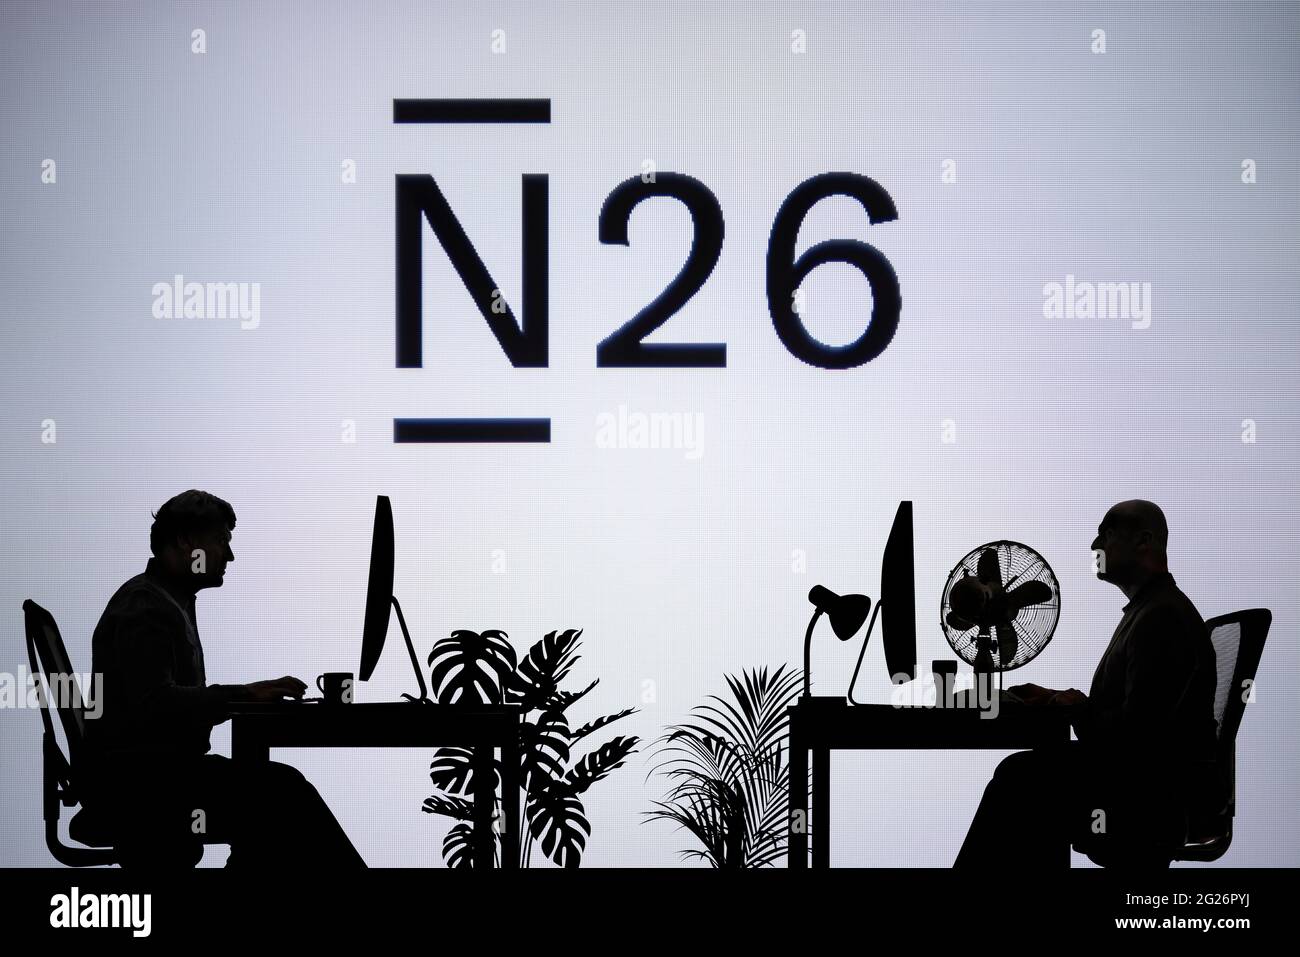 Le logo N26 Bank est visible sur un écran LED en arrière-plan tandis que deux personnes silhoueteuses travaillent dans un environnement de bureau (usage éditorial uniquement) Banque D'Images